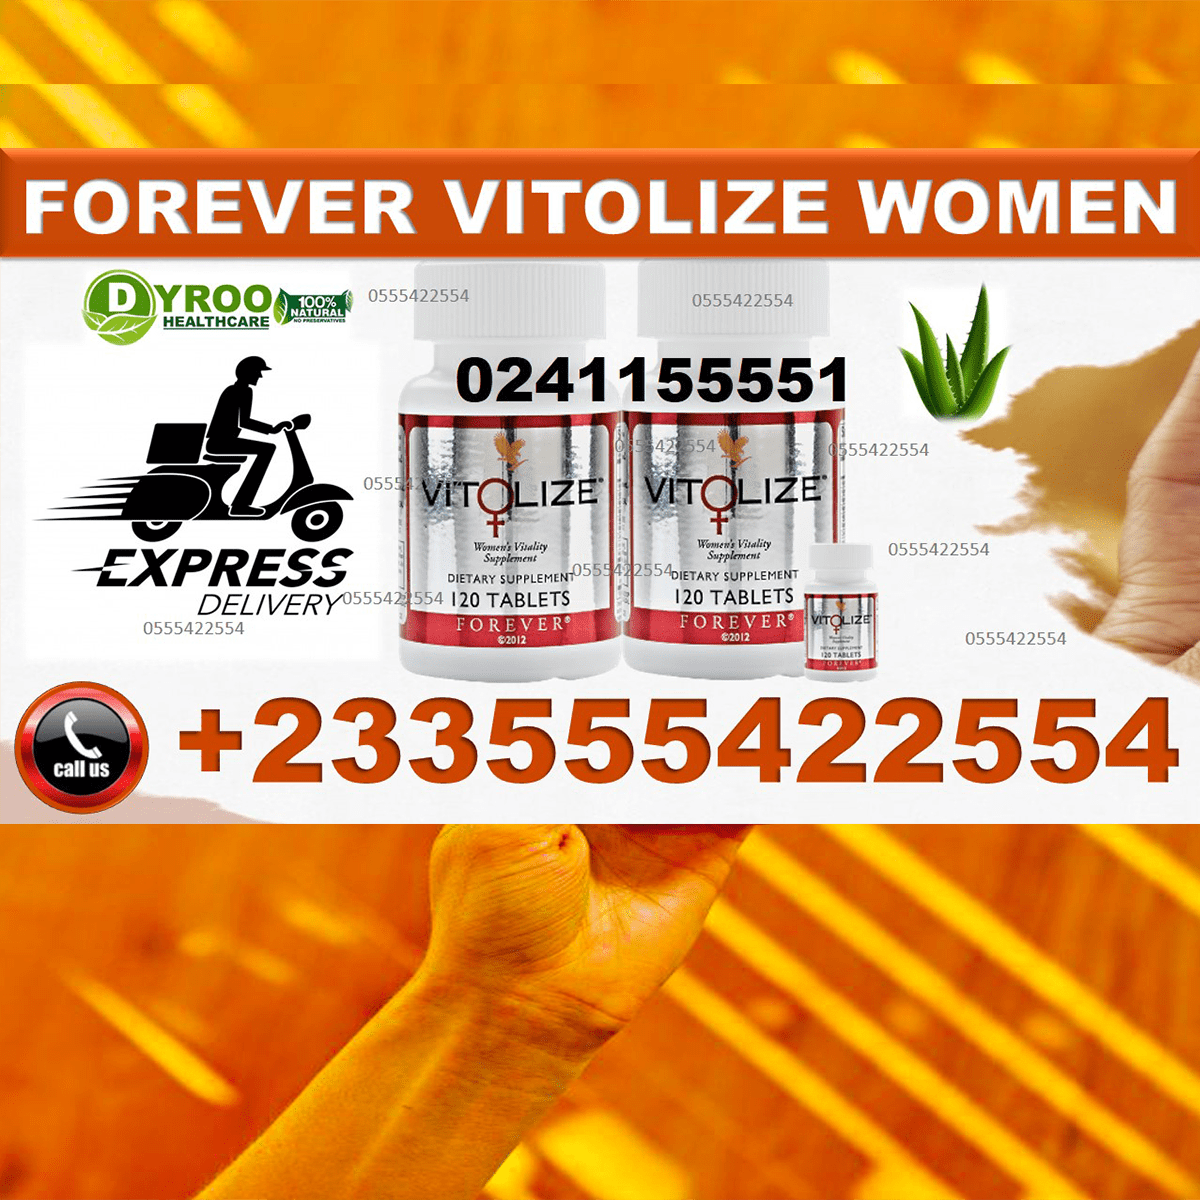 Forever Vitolize for Women in Ghana